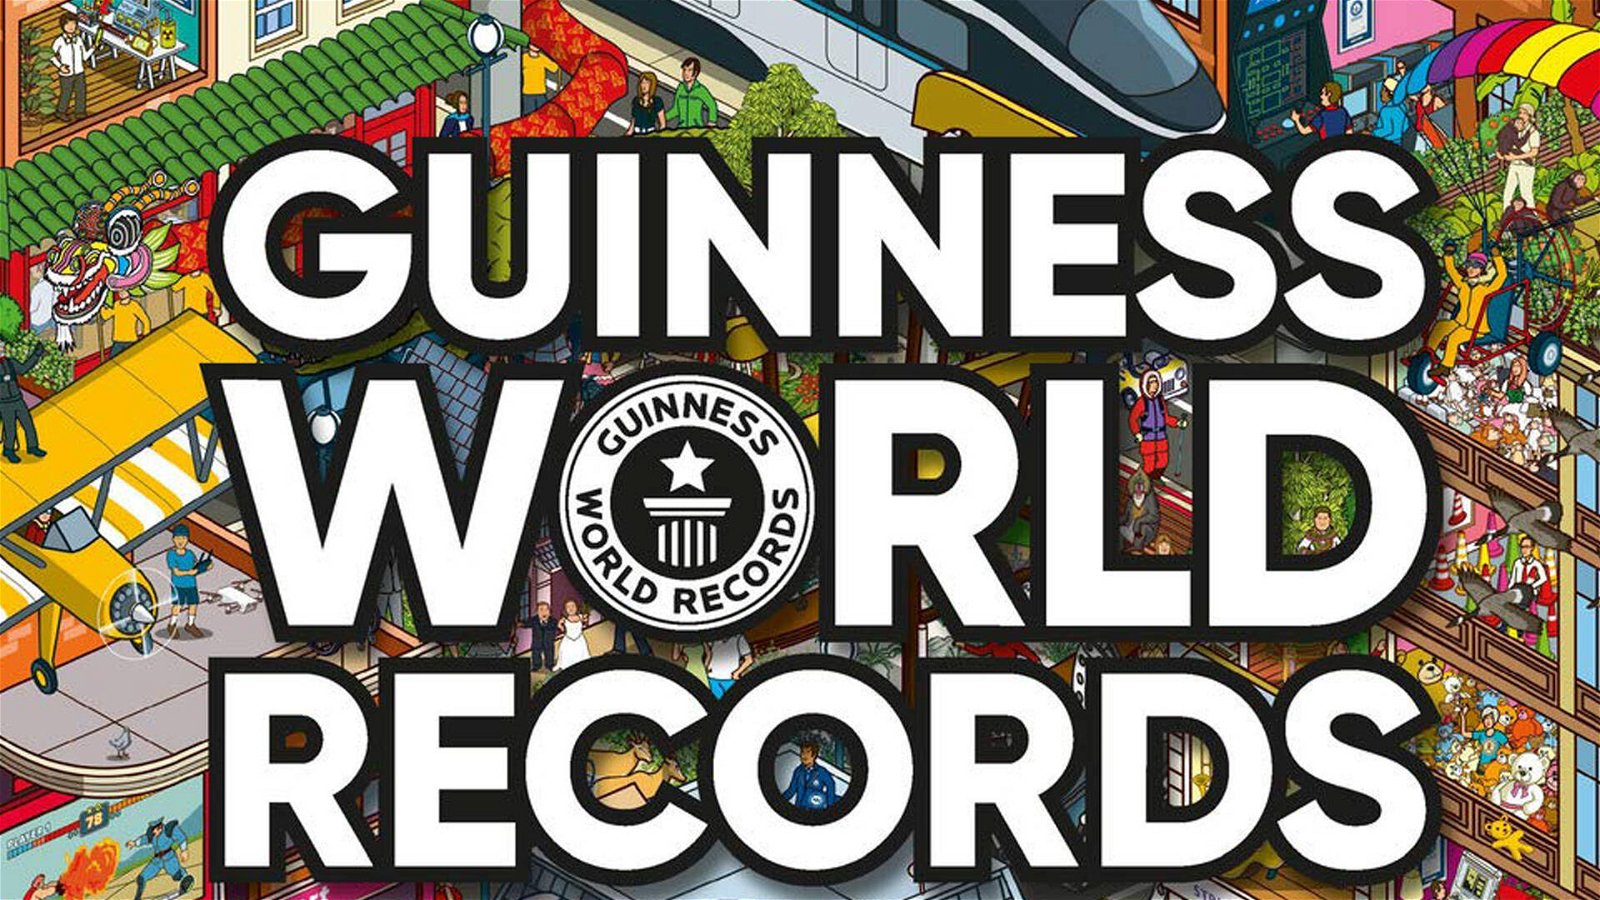 Immagine di Il Libro dei Guinness World Records 2021 - Recensione